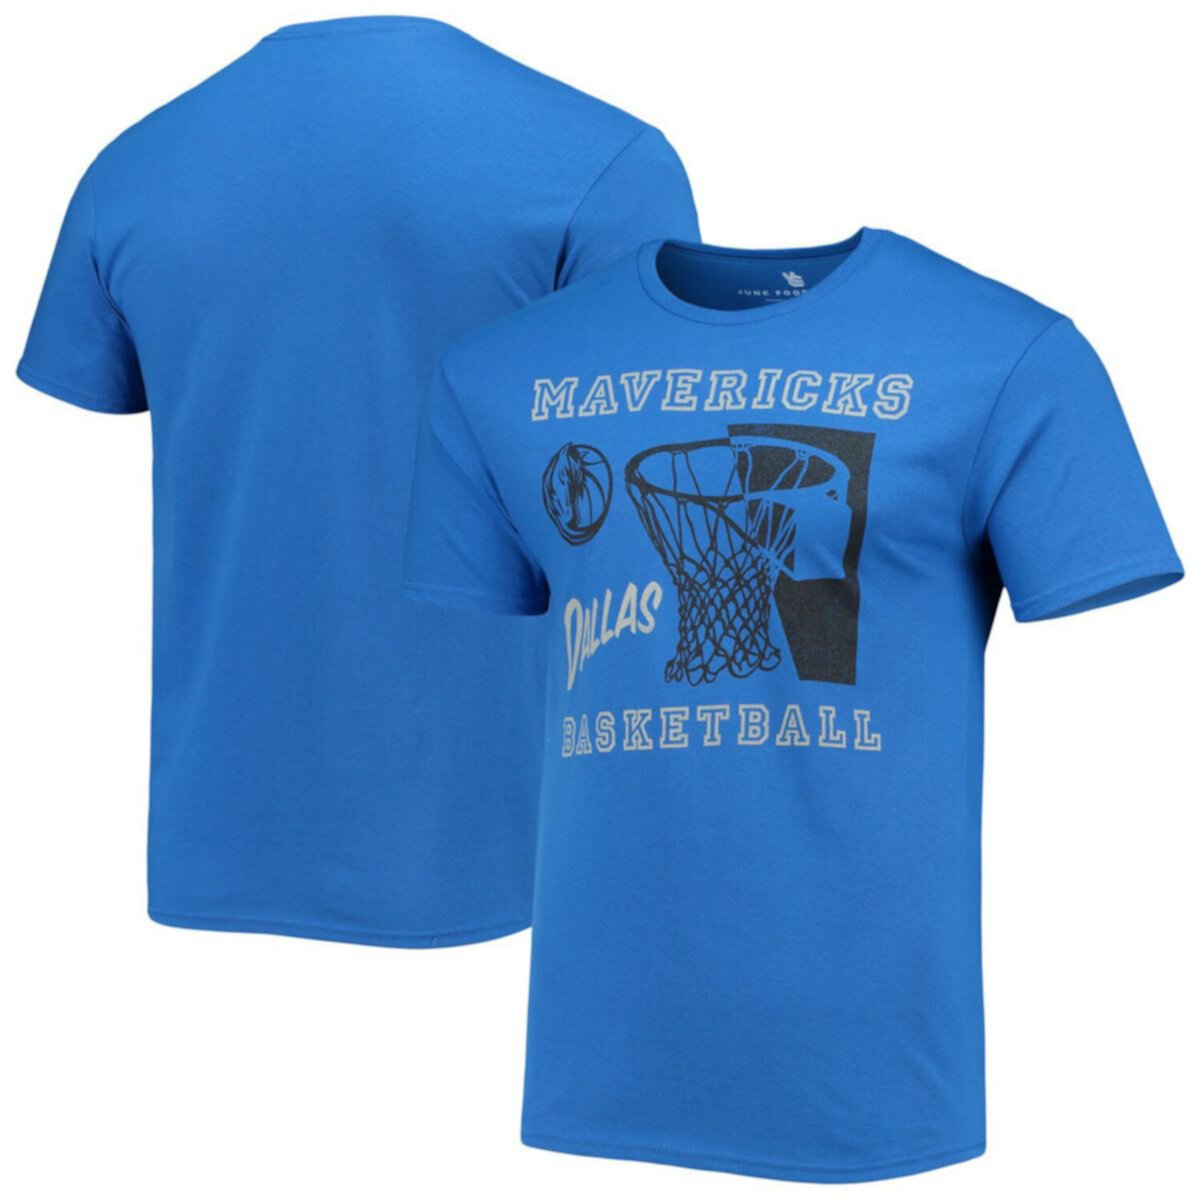 N since. Футболка Даллас Маверикс. Мужские футболки синие Fanatics. Mitchell&Ness Original футболка голубая мужская.